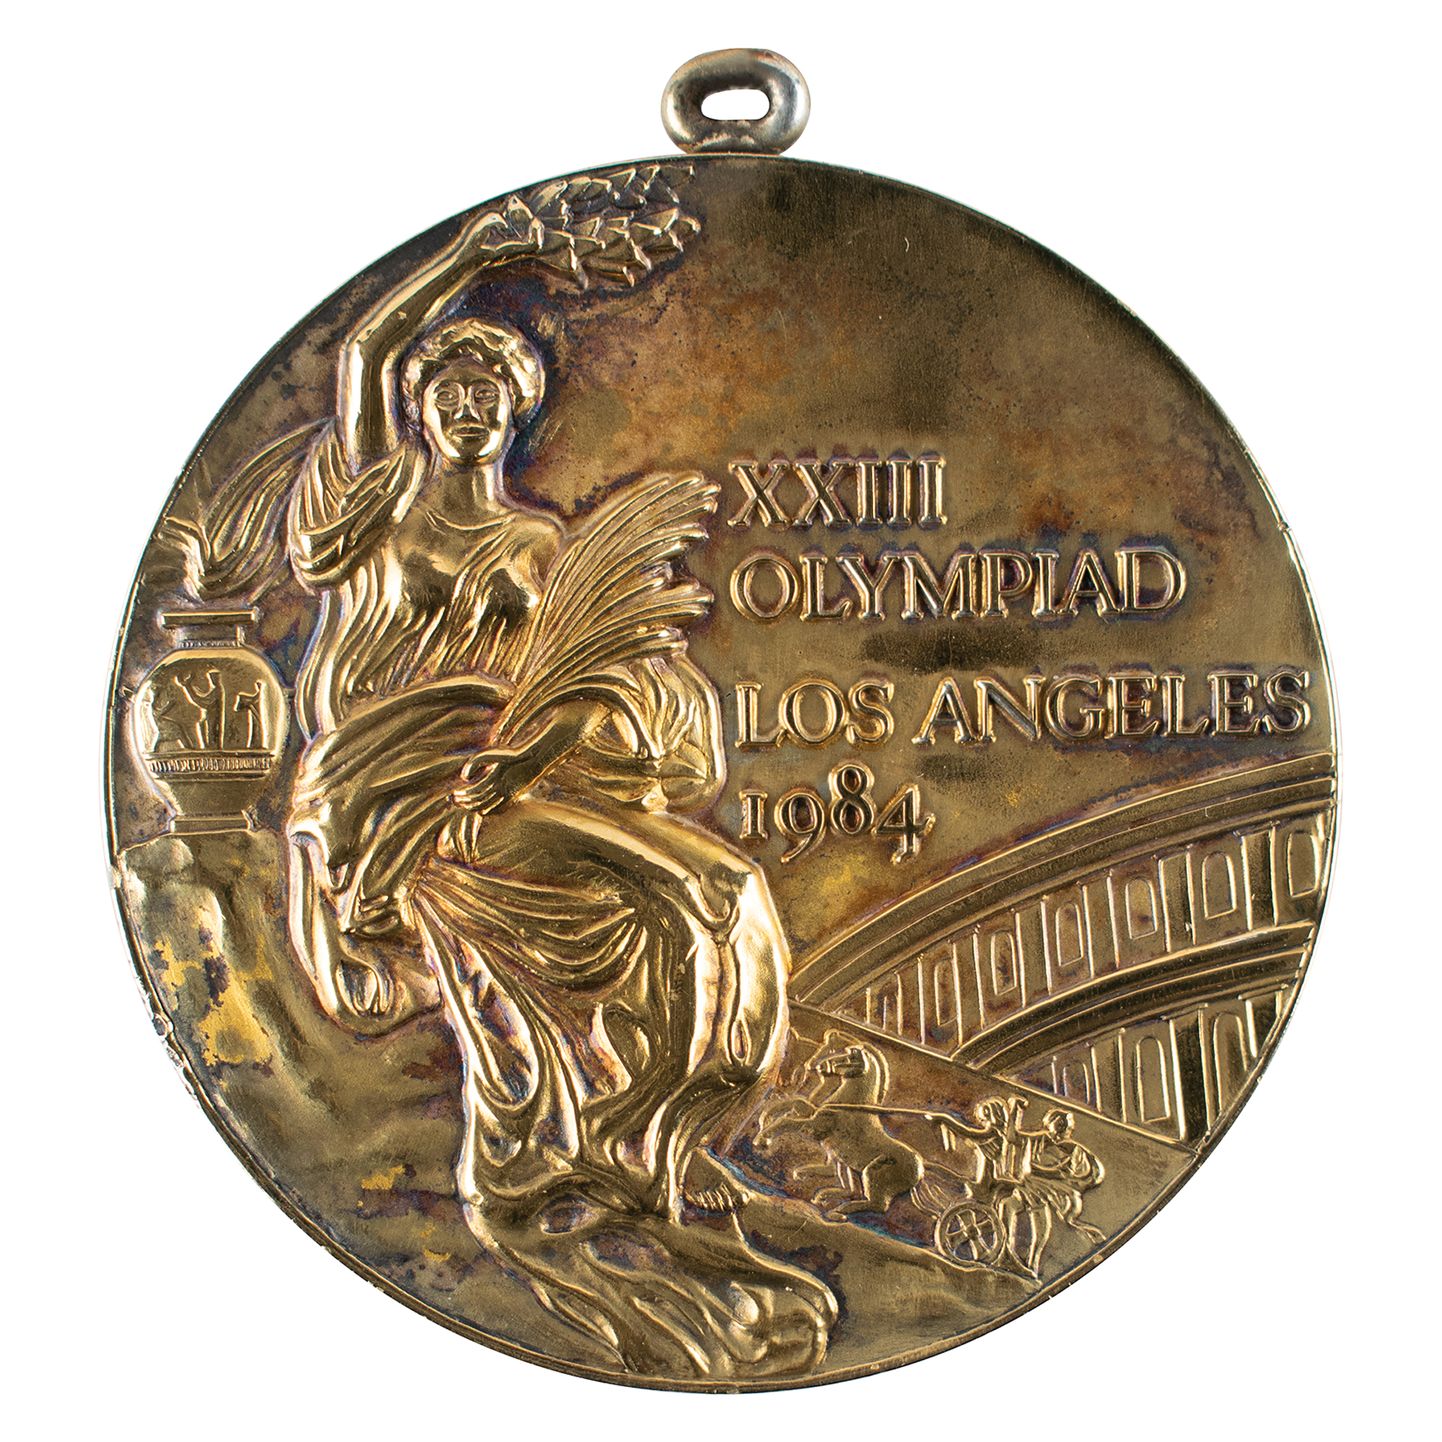 1984. aasta OM-i USA korvpallimeeskonna kuldmedal.